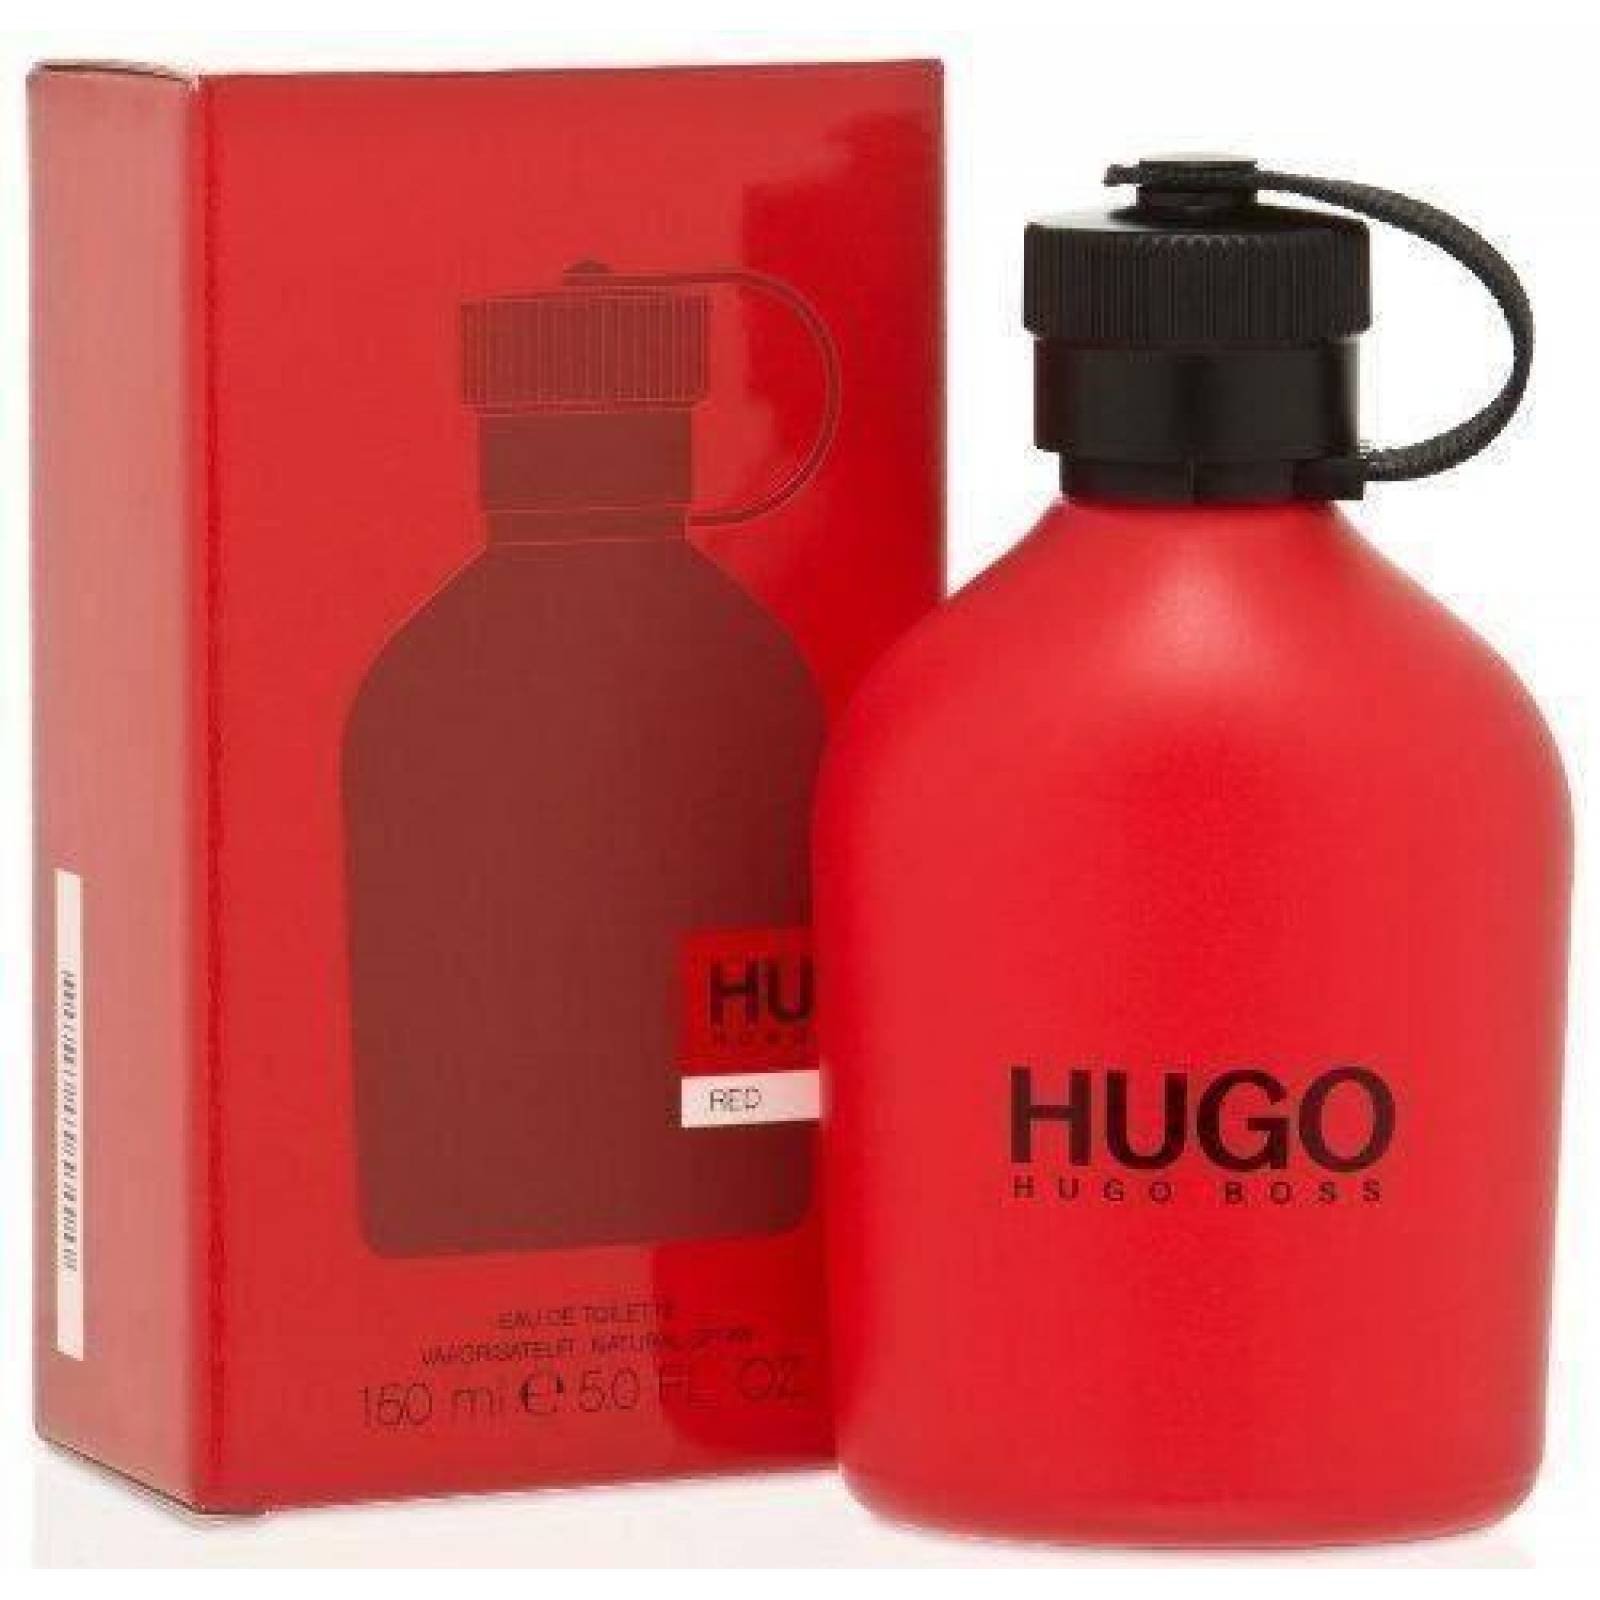 Hugo Red Caballero Hugo Boss 200 Ml Edt Spray - Original